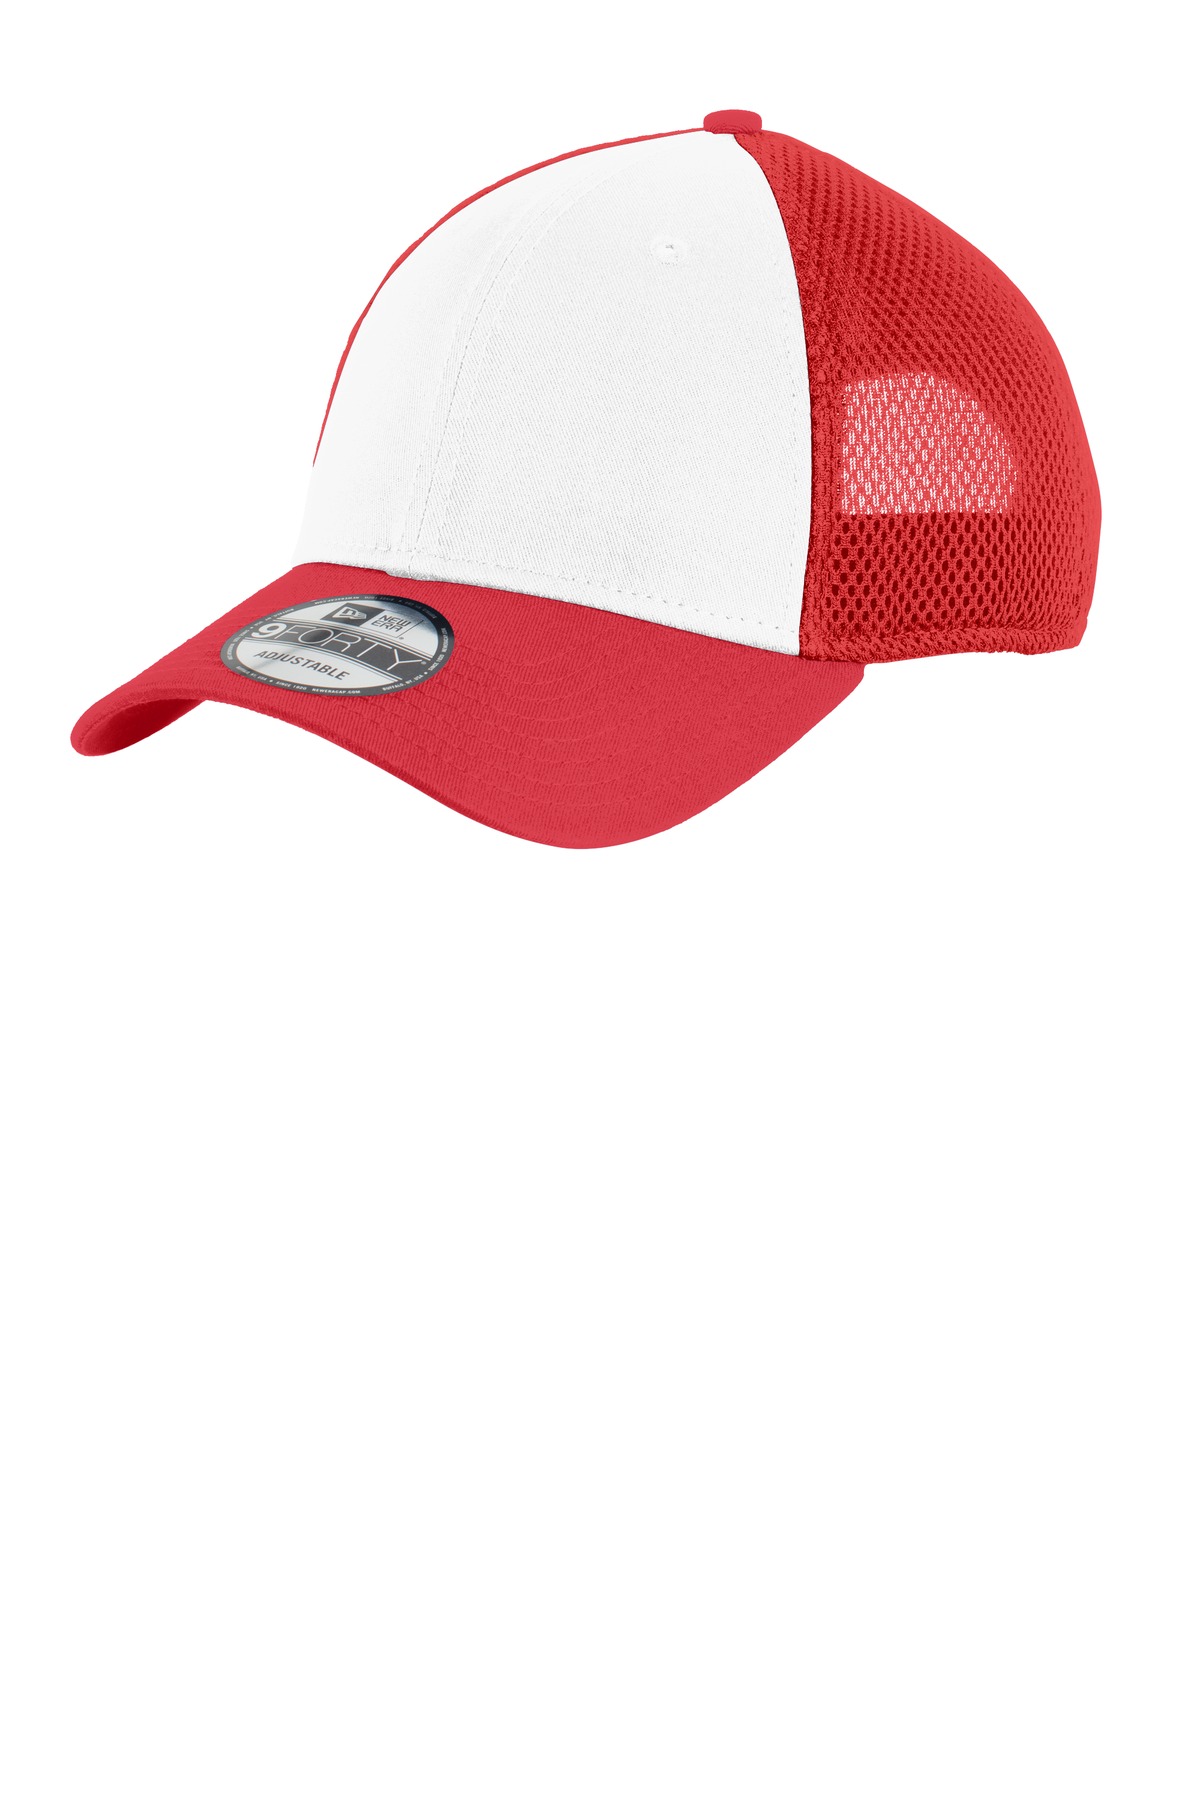 New Era Hospitality Caps ® Snapback Contrast Front Mesh Cap.-New Era